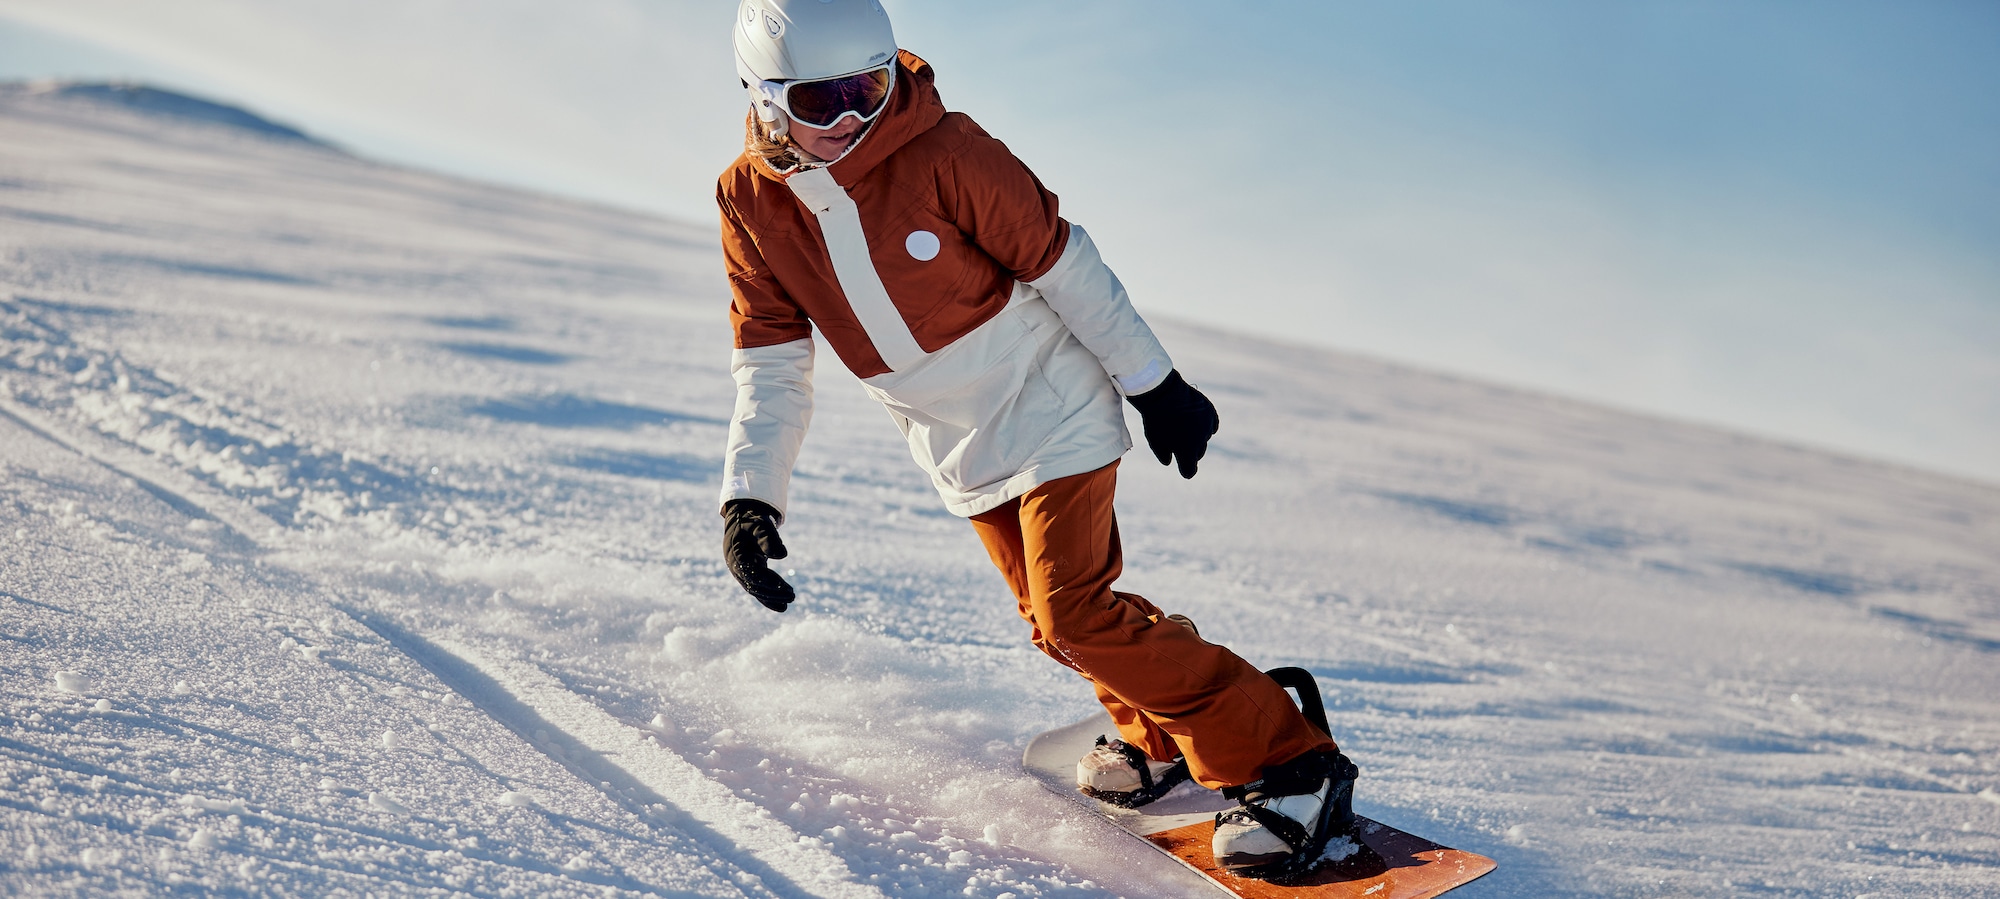 Chauds et imperméables Pantalons de snowboard